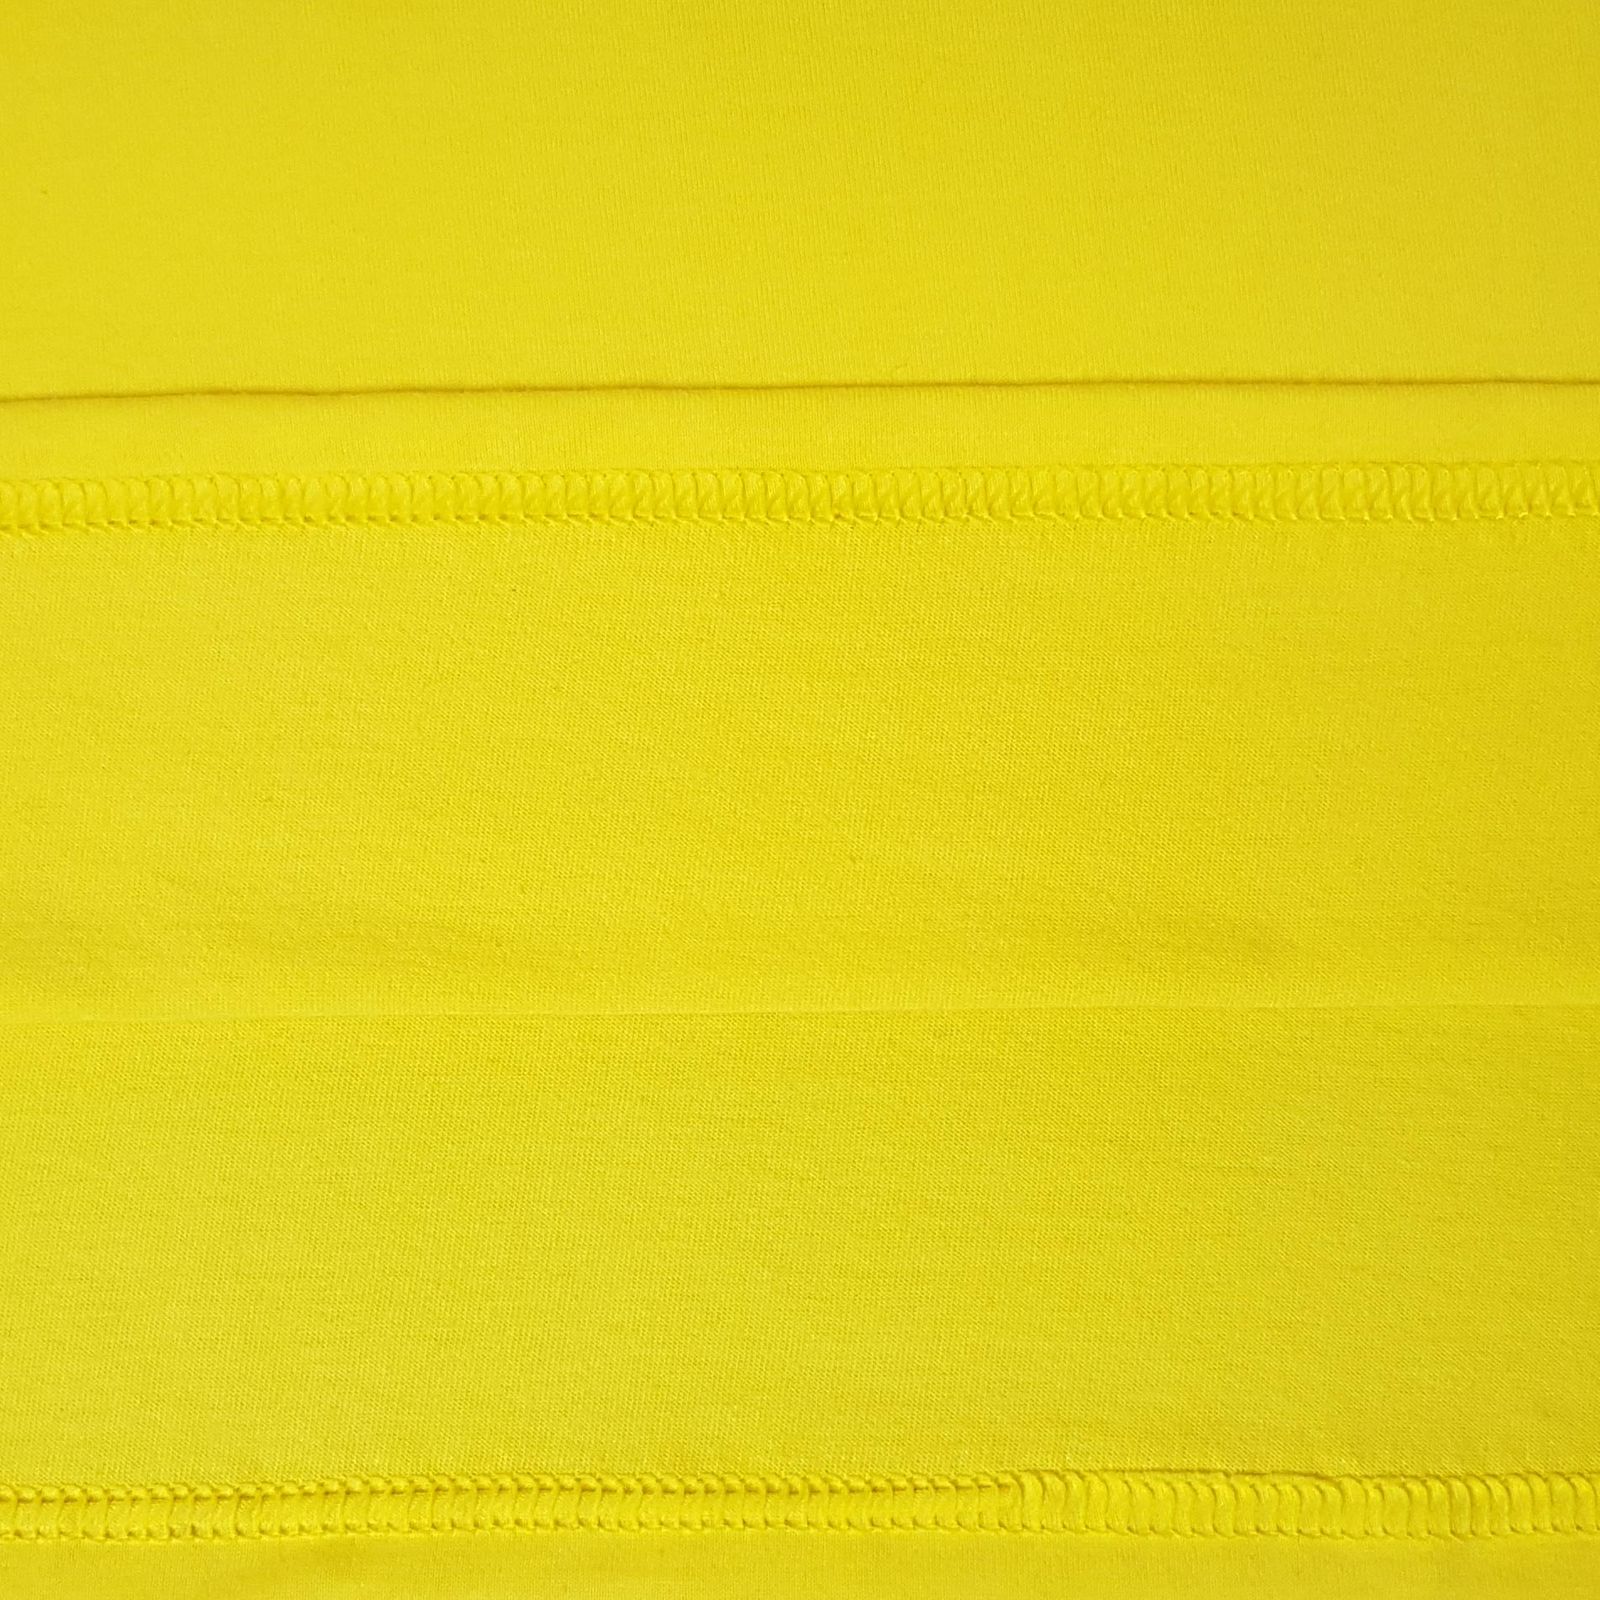 زیرپوش آستین دار مردانه ماییلدا مدل پنبه ای کد 4710 رنگ زرد -  - 8